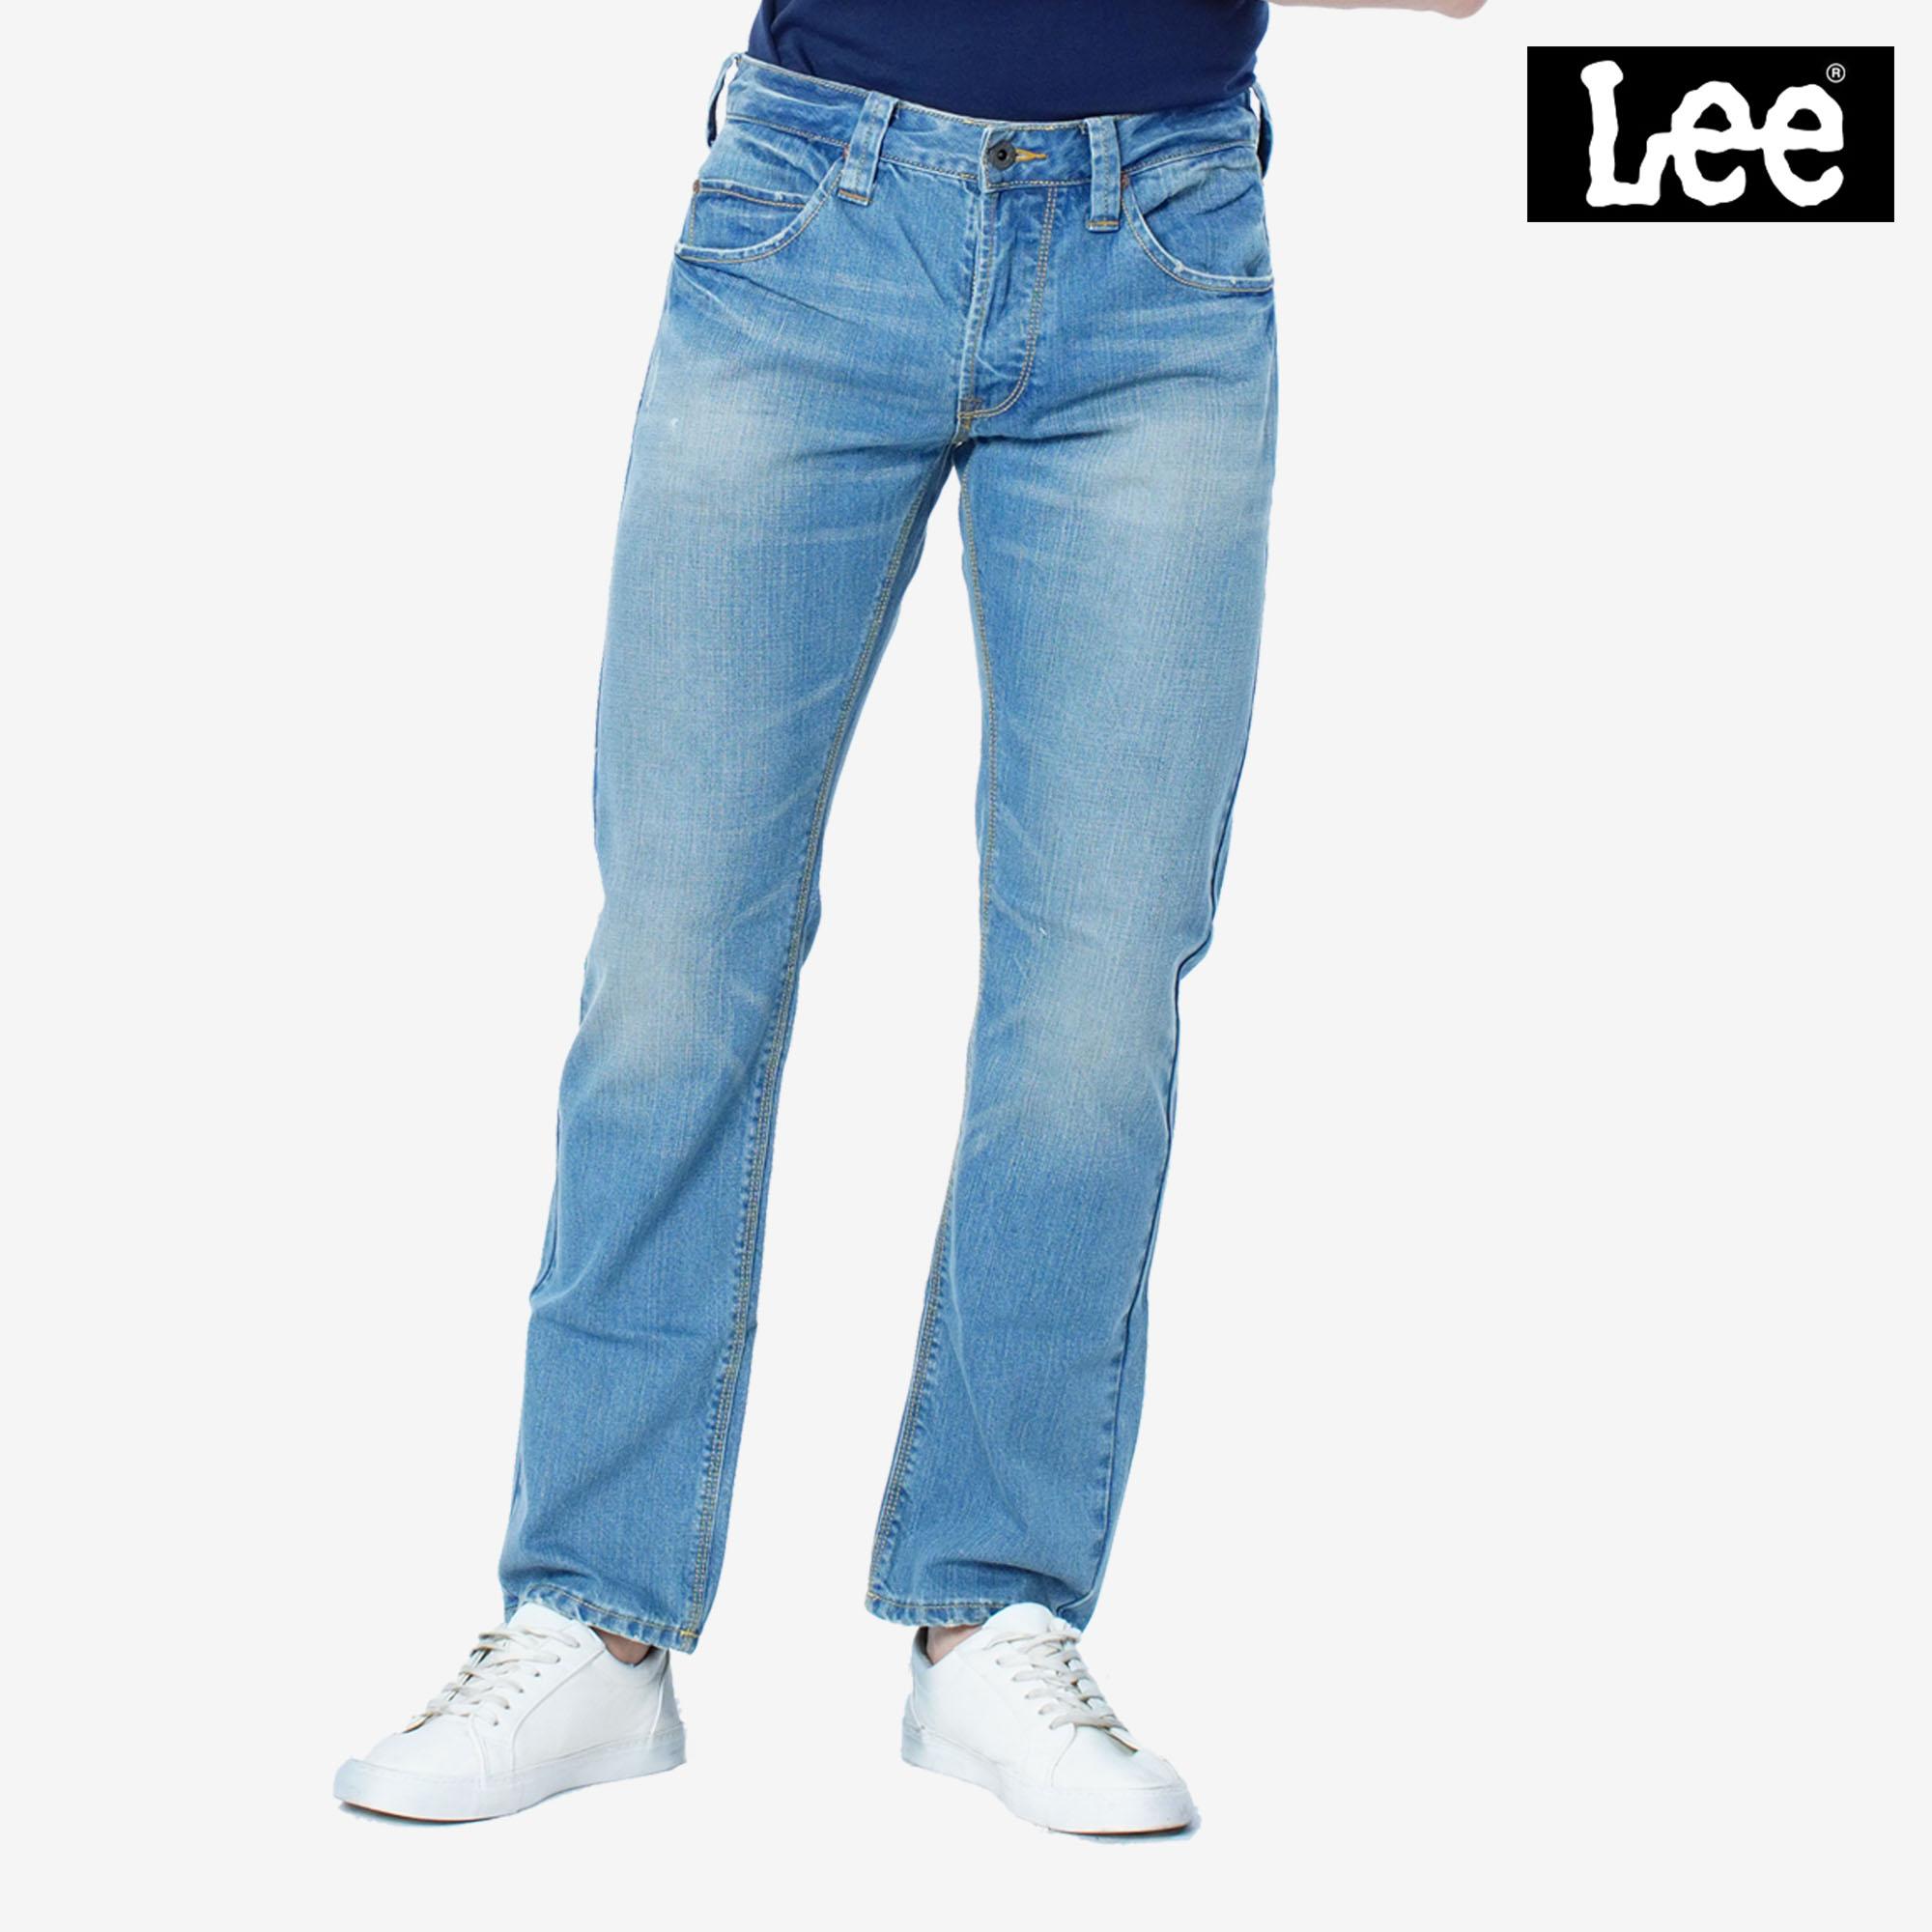 buy lee jeans